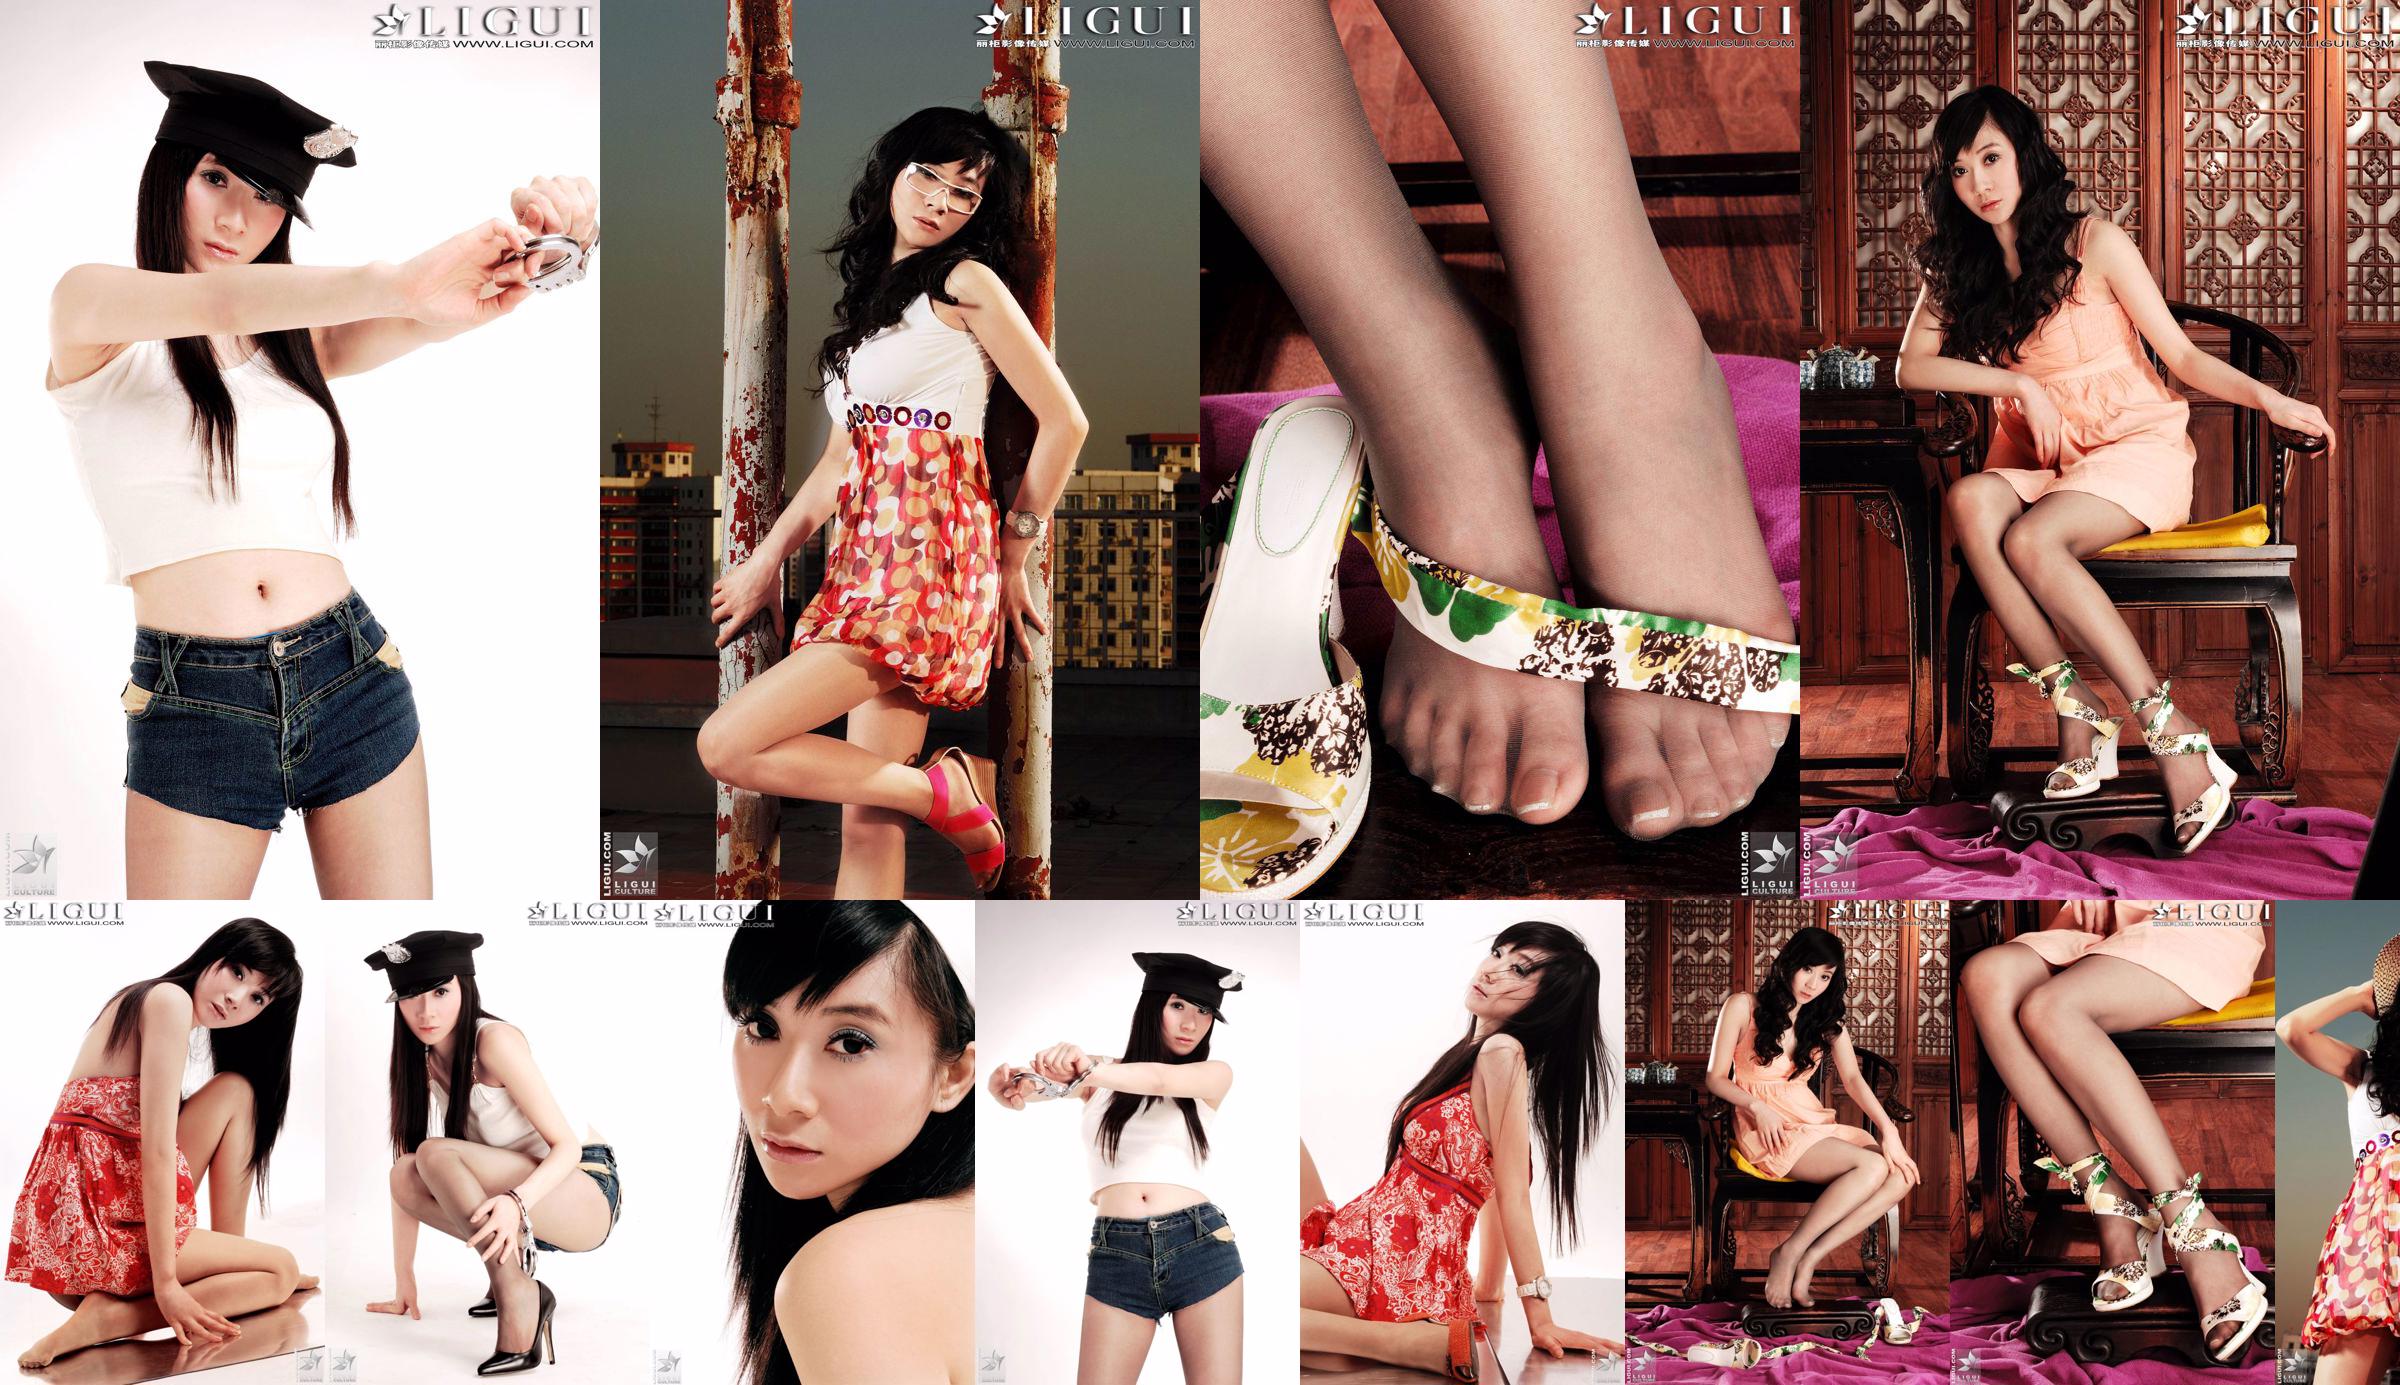 [丽柜LiGui] Model Jinxin Silky Foot and Beautiful Legs Photo Picture No.27cb78 Page 1